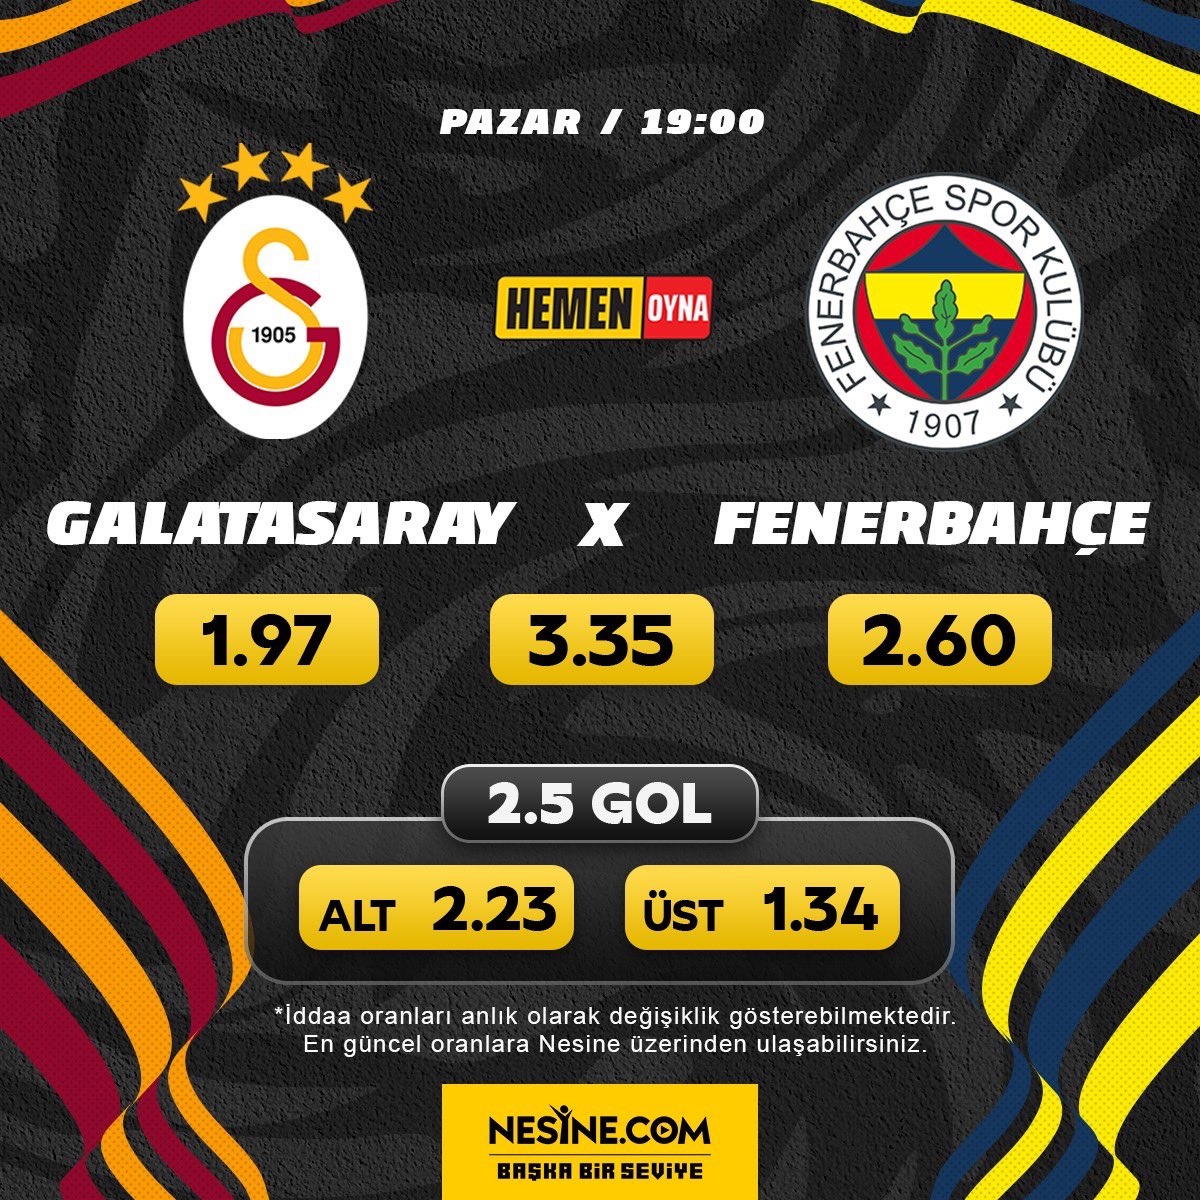 Süper Lig'de yılın en çok beklenen maçı geldi! Galatasaray şampiyonluğunu ilan etmek, Fenerbahçe ise şampiyonluk yarışını son haftaya taşımak istiyor! Galatasaray-Fenerbahçe mücadelesi CANLI İDDAA seçeneğiyle Nesine.com'da! Hemen Oyna 👉 bit.ly/3V4SUwX